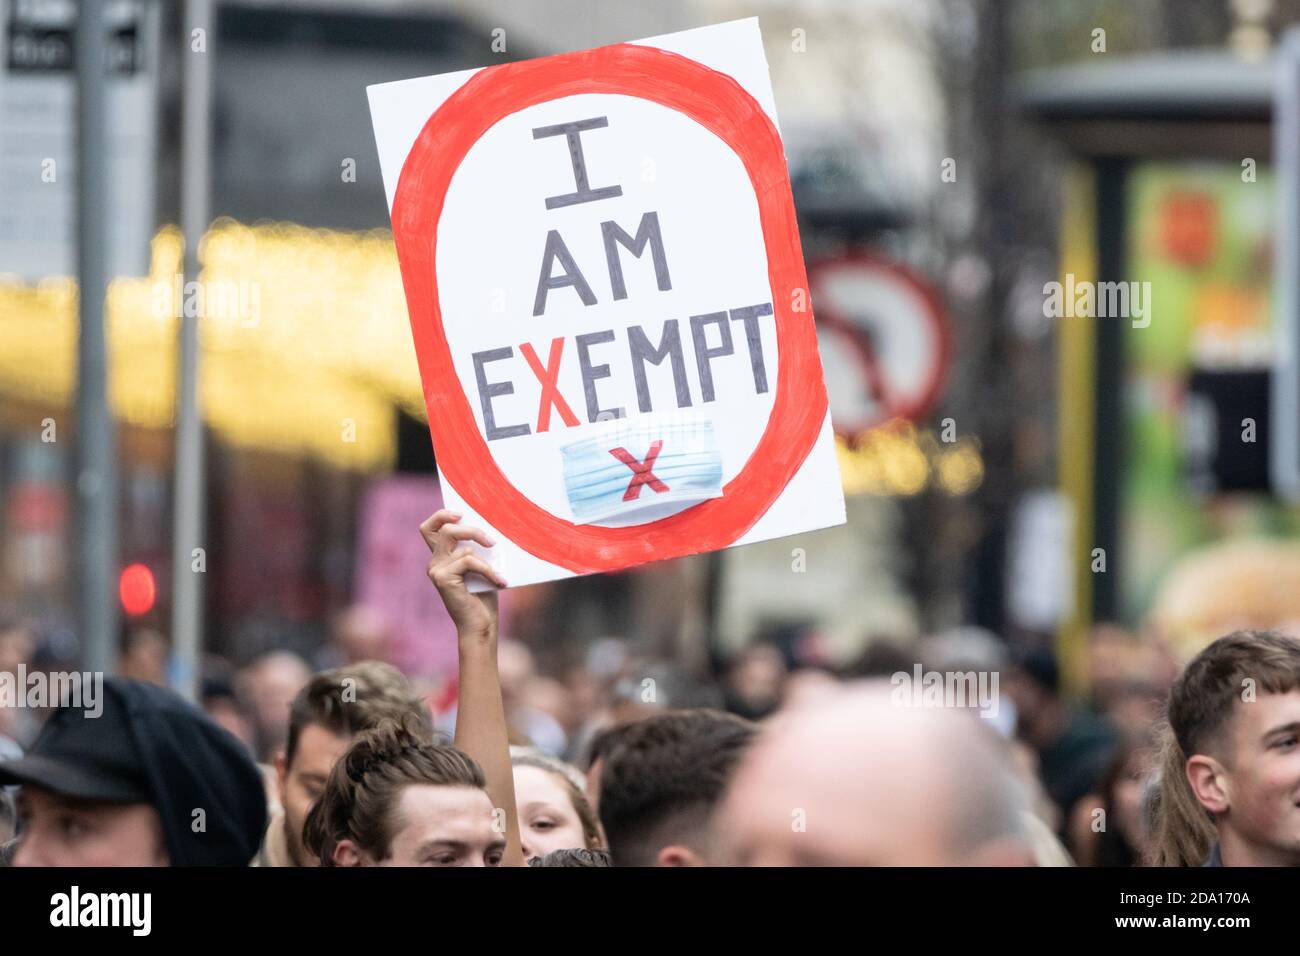 Manchester 08-11-2020, un manifestant tient l'affiche Je suis exonéré au-dessus de la foule, en référence à l'exemption de porter un masque, Covid, Covid-19, Angleterre, Royaume-Uni Banque D'Images